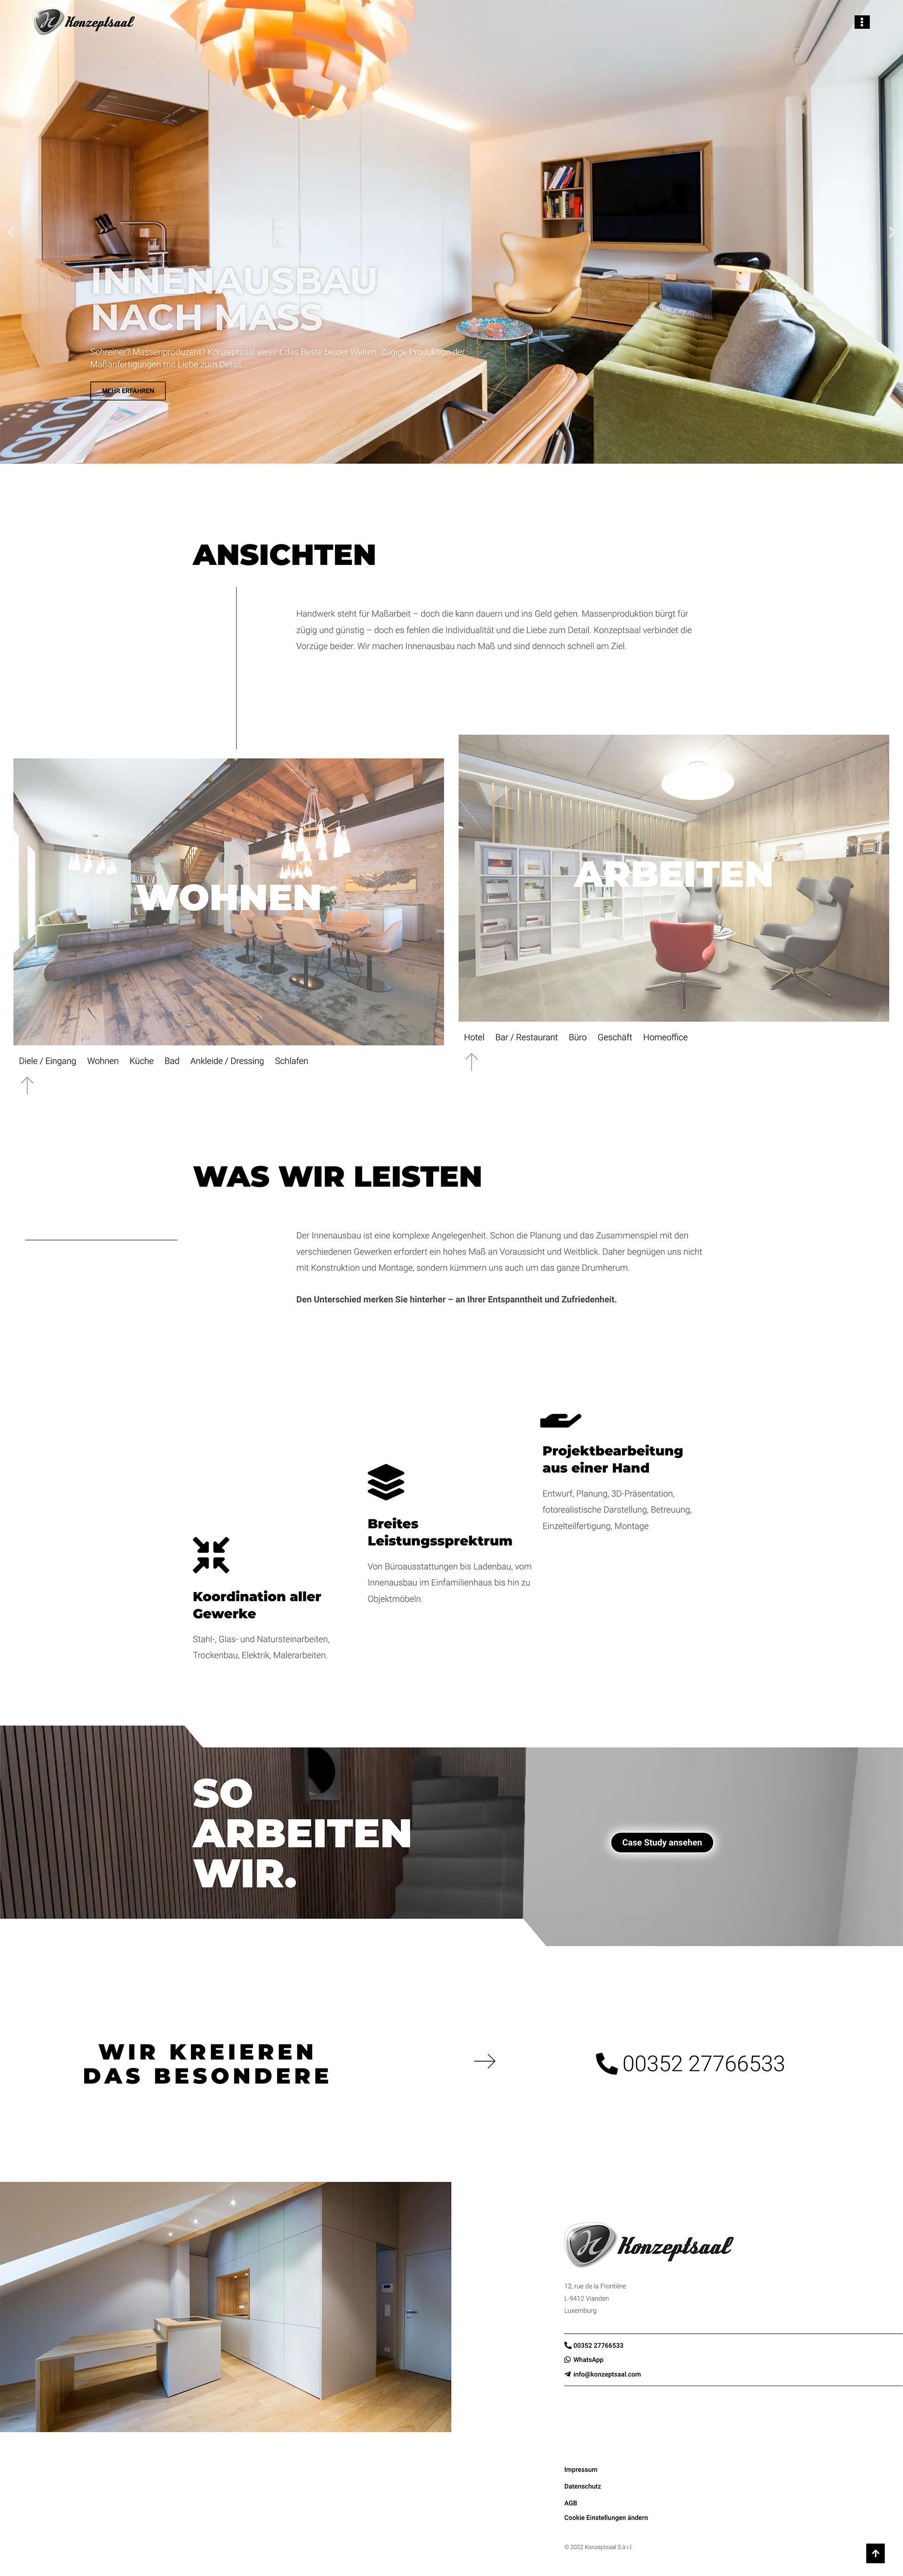 Webdesign Referenz Weingut Bus Darien Pfirrmann Content Marketing & Design